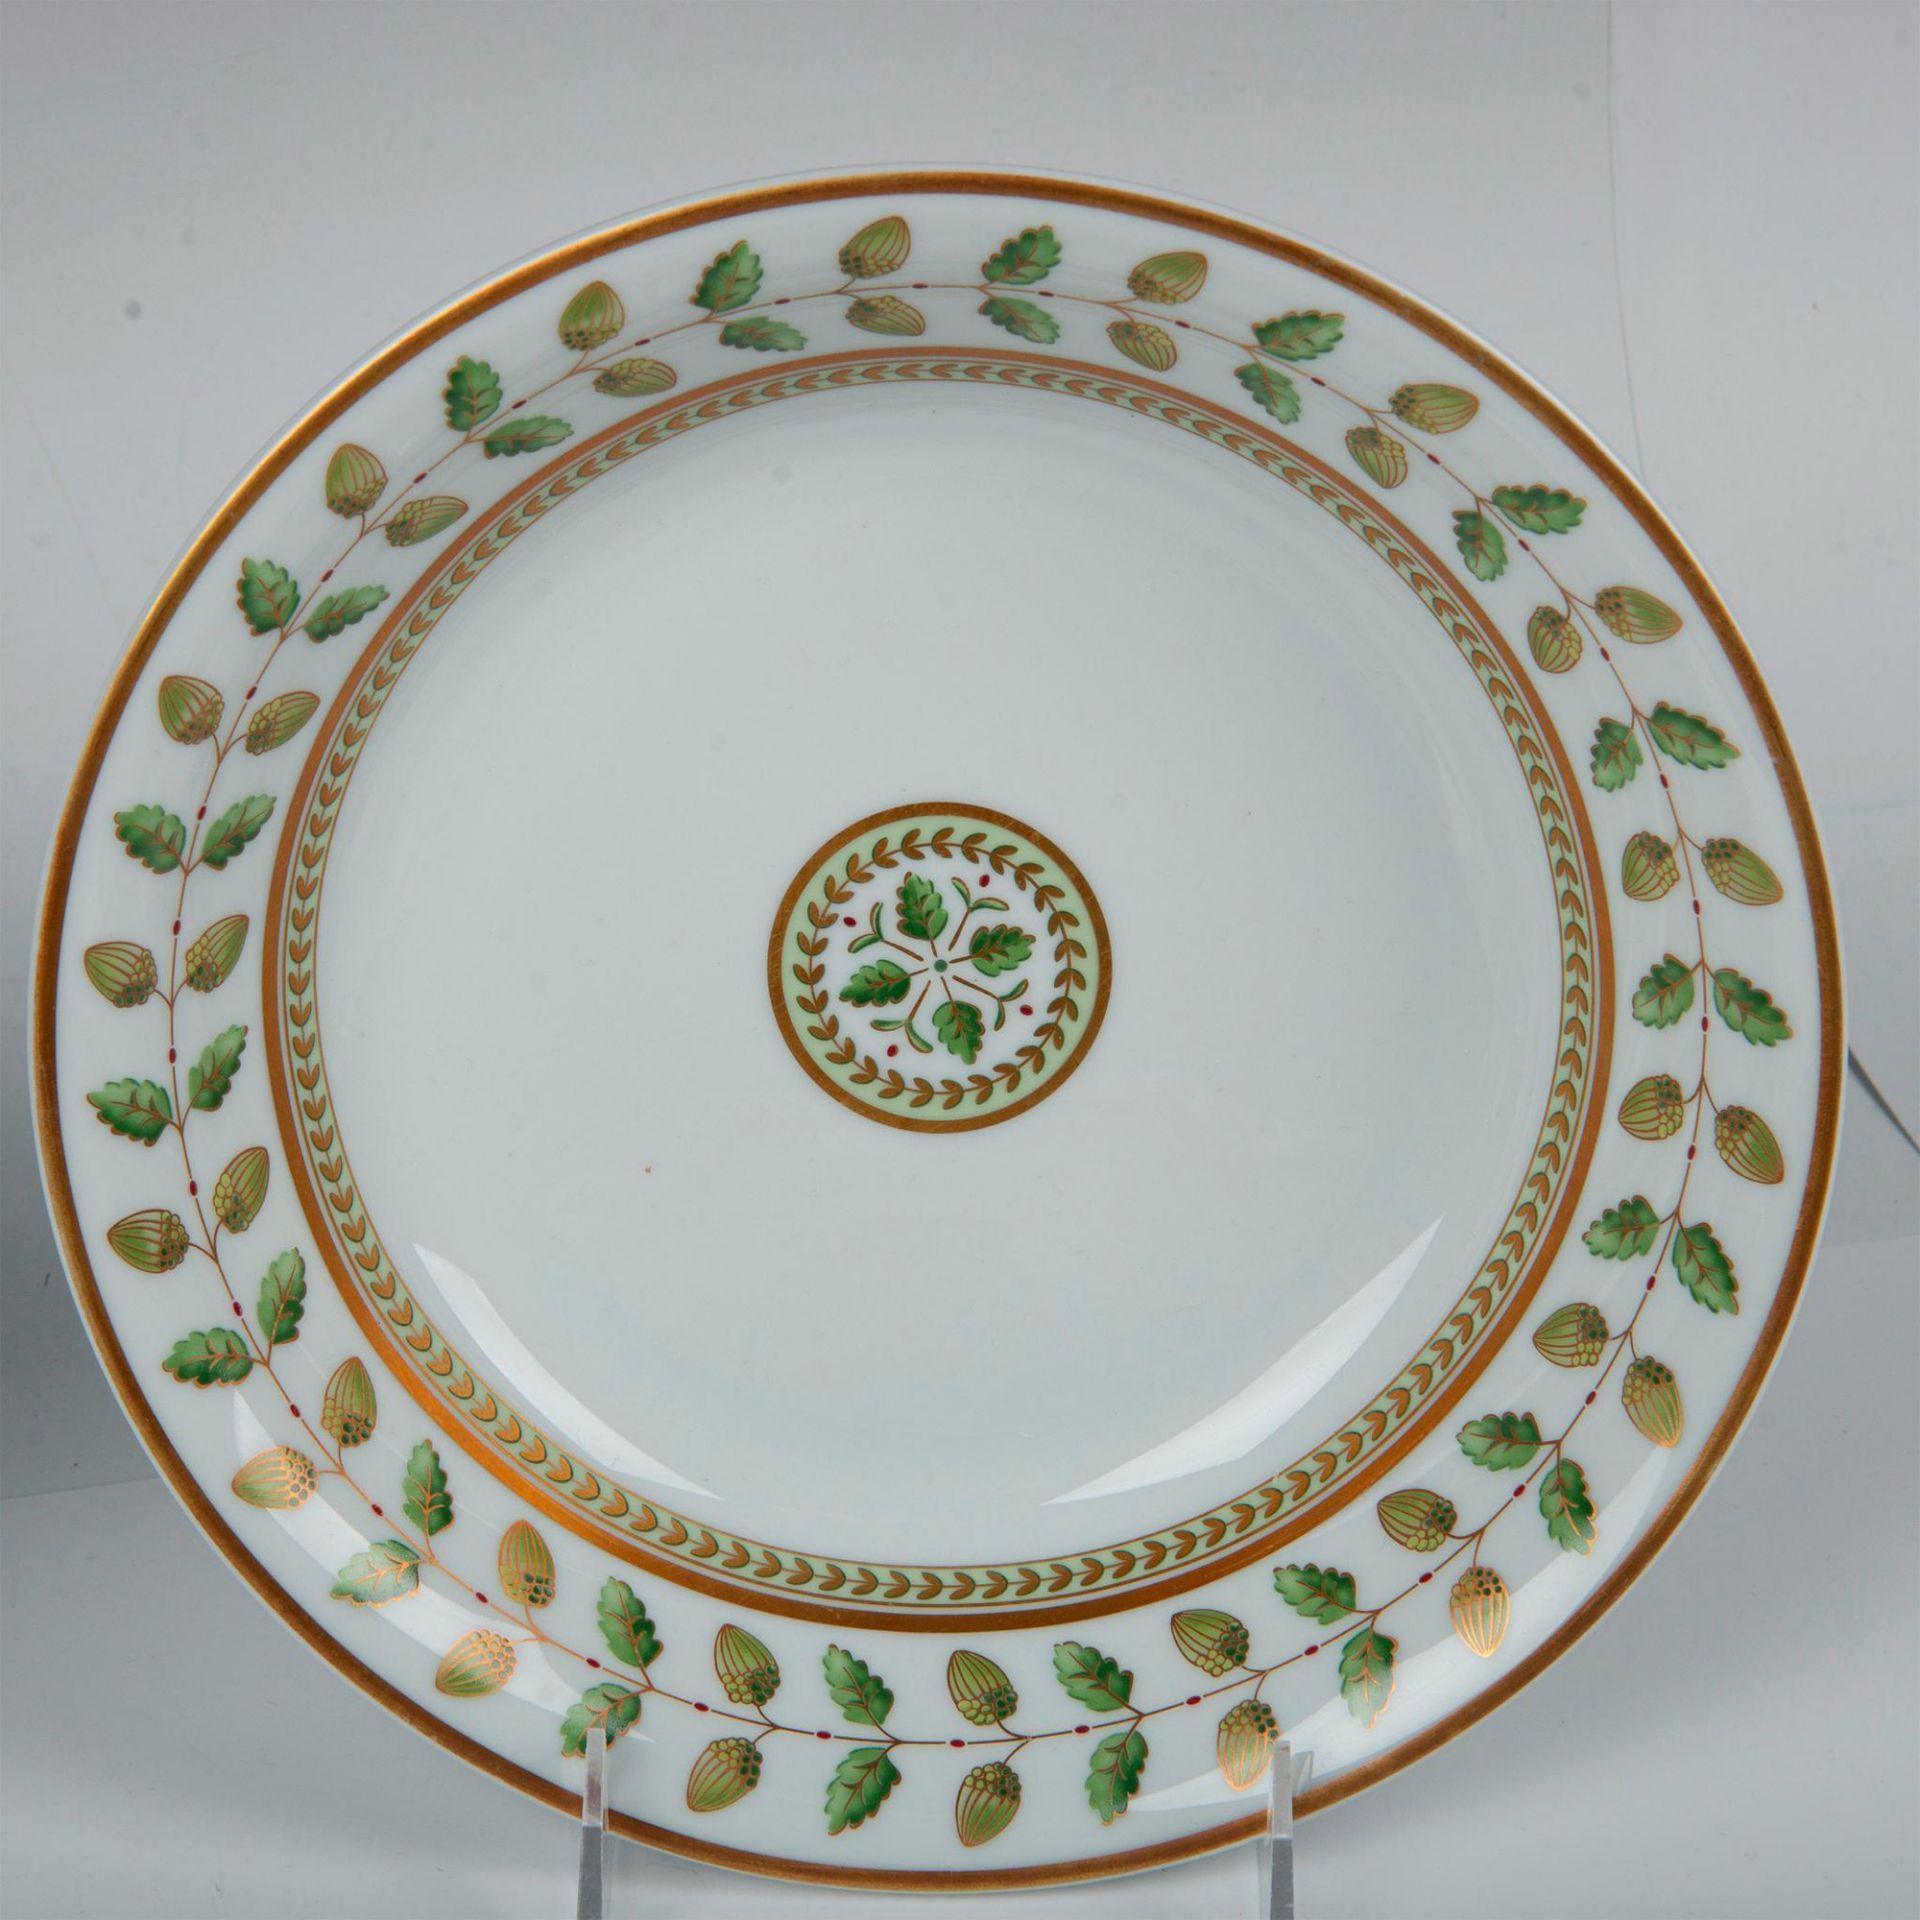 6pc Bernardaud Limoges Porcelain Serving Dishes, Constance - Image 3 of 5